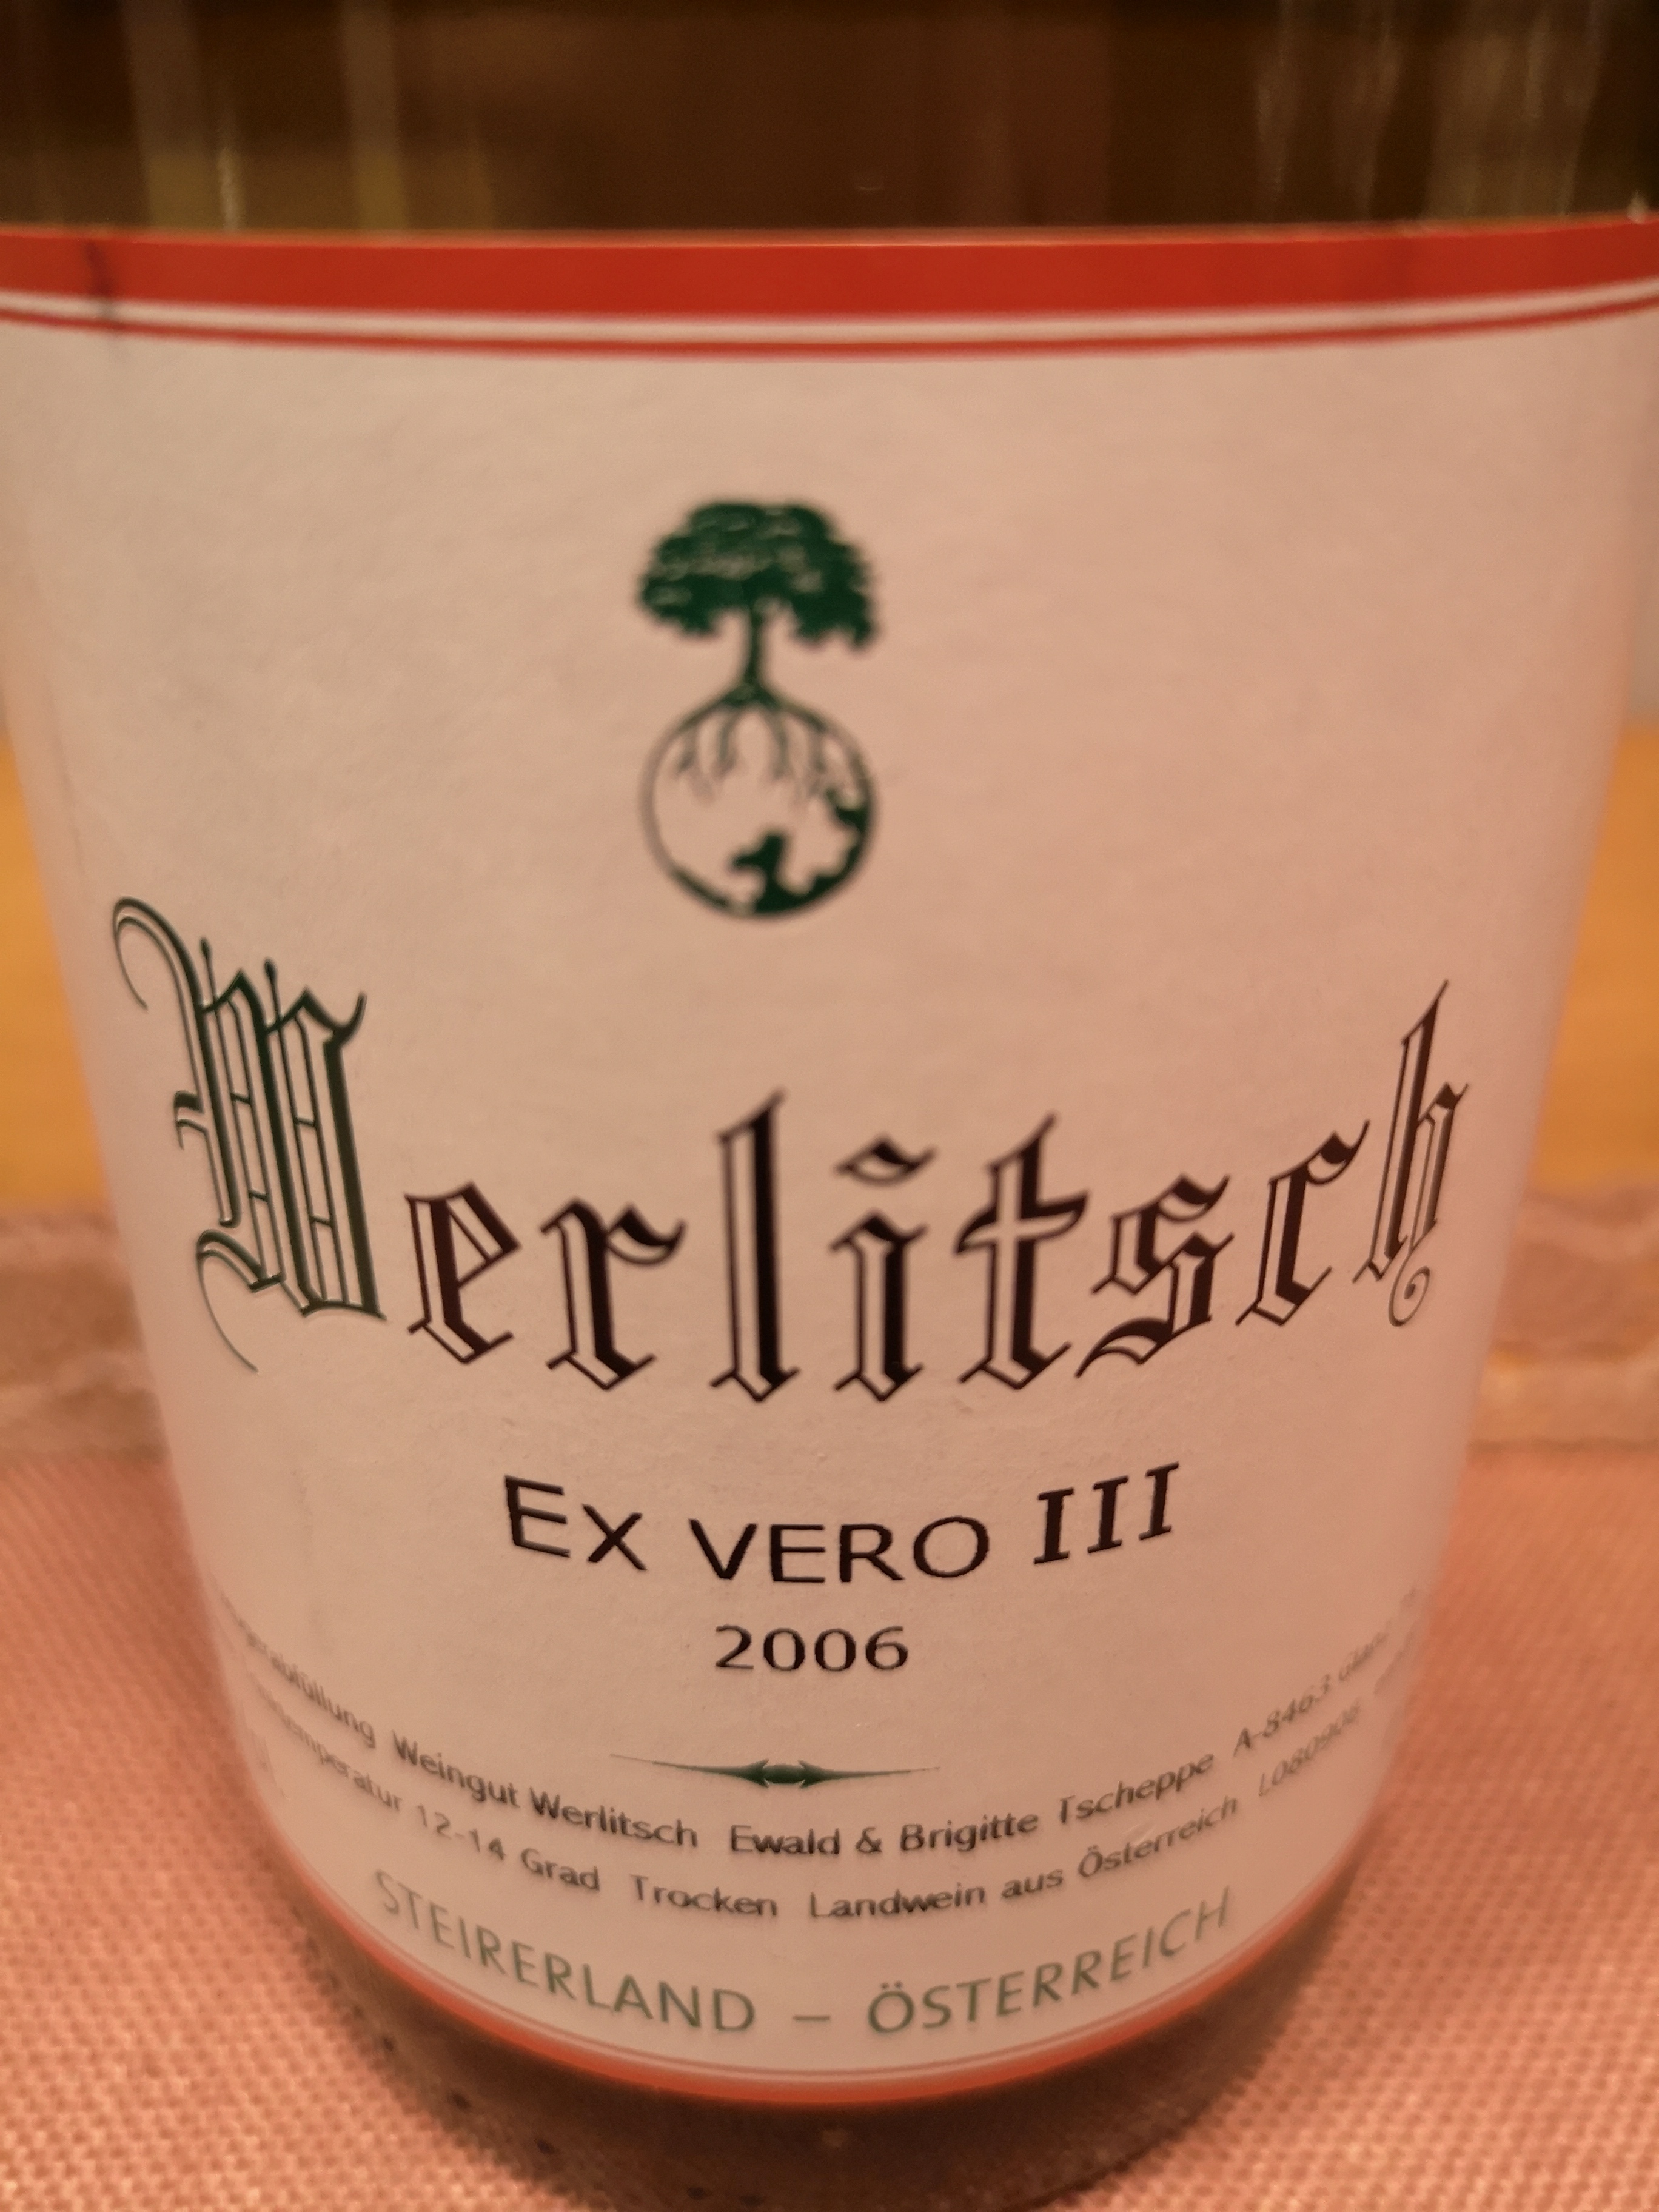 2006 Ex Vero III | Werlitsch